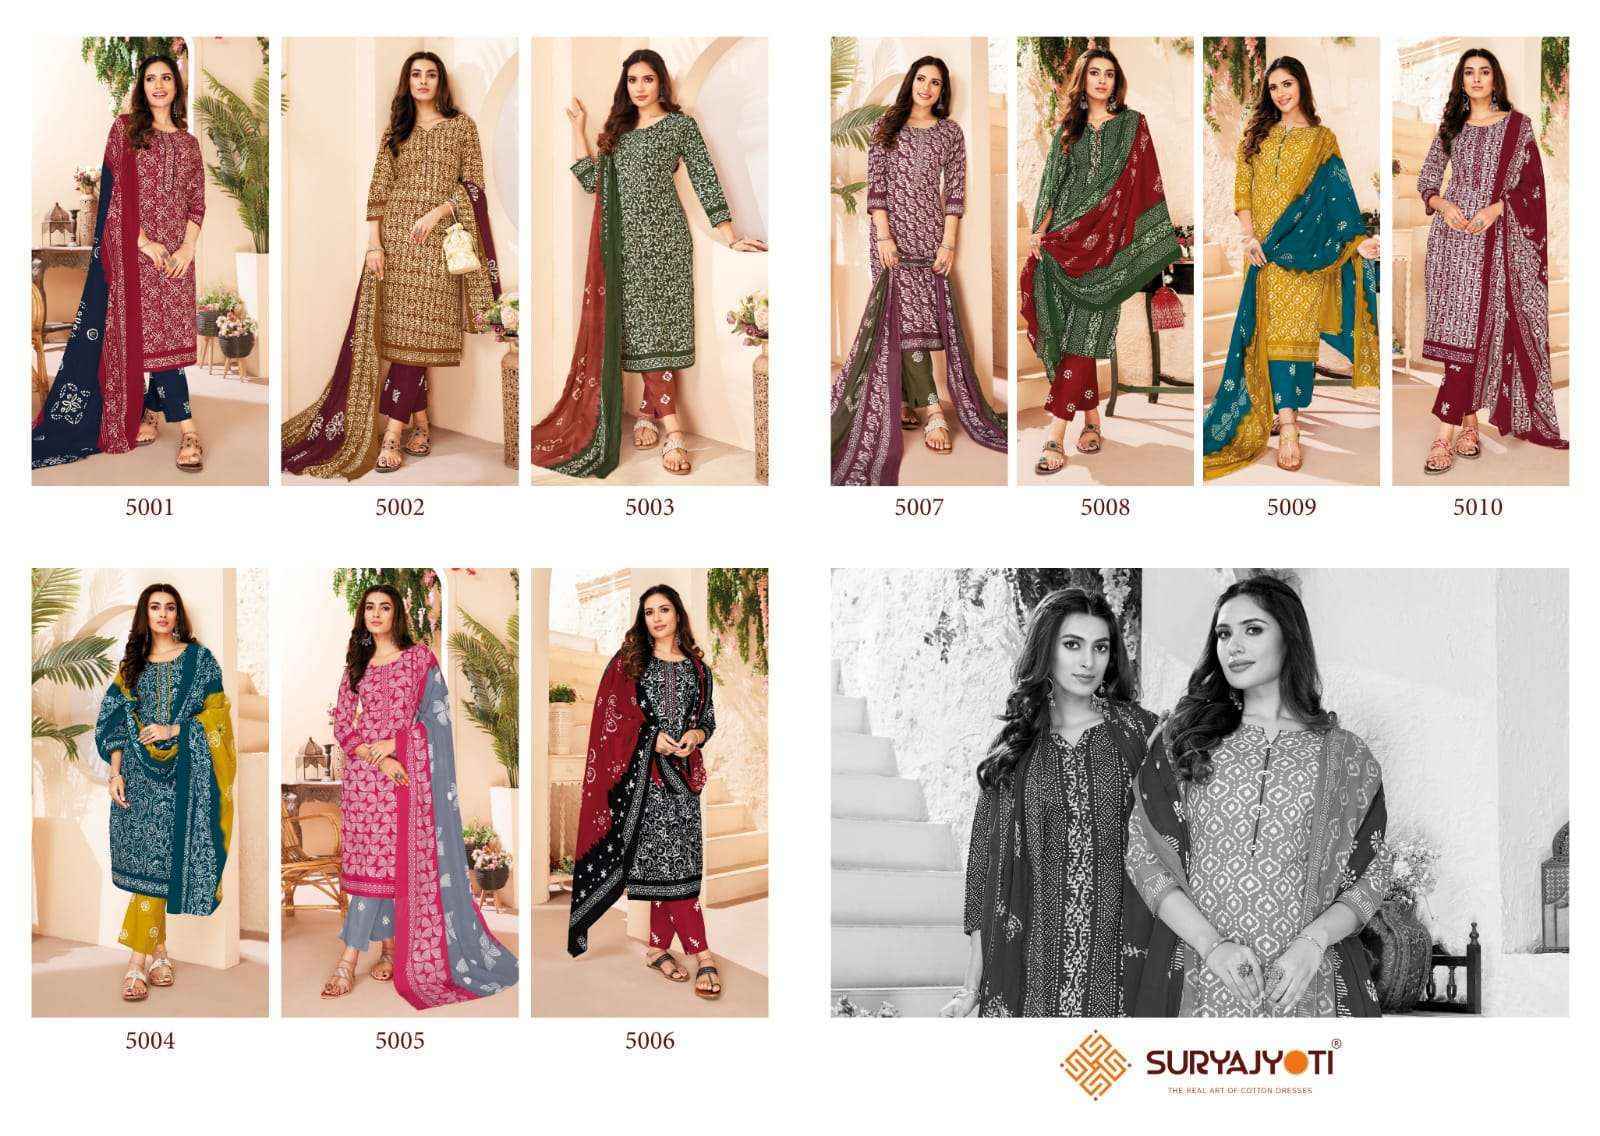 Suryajyoti Pehnava Vol 5 Cambric Cotton Dress Material (10 pcs Catalogue )